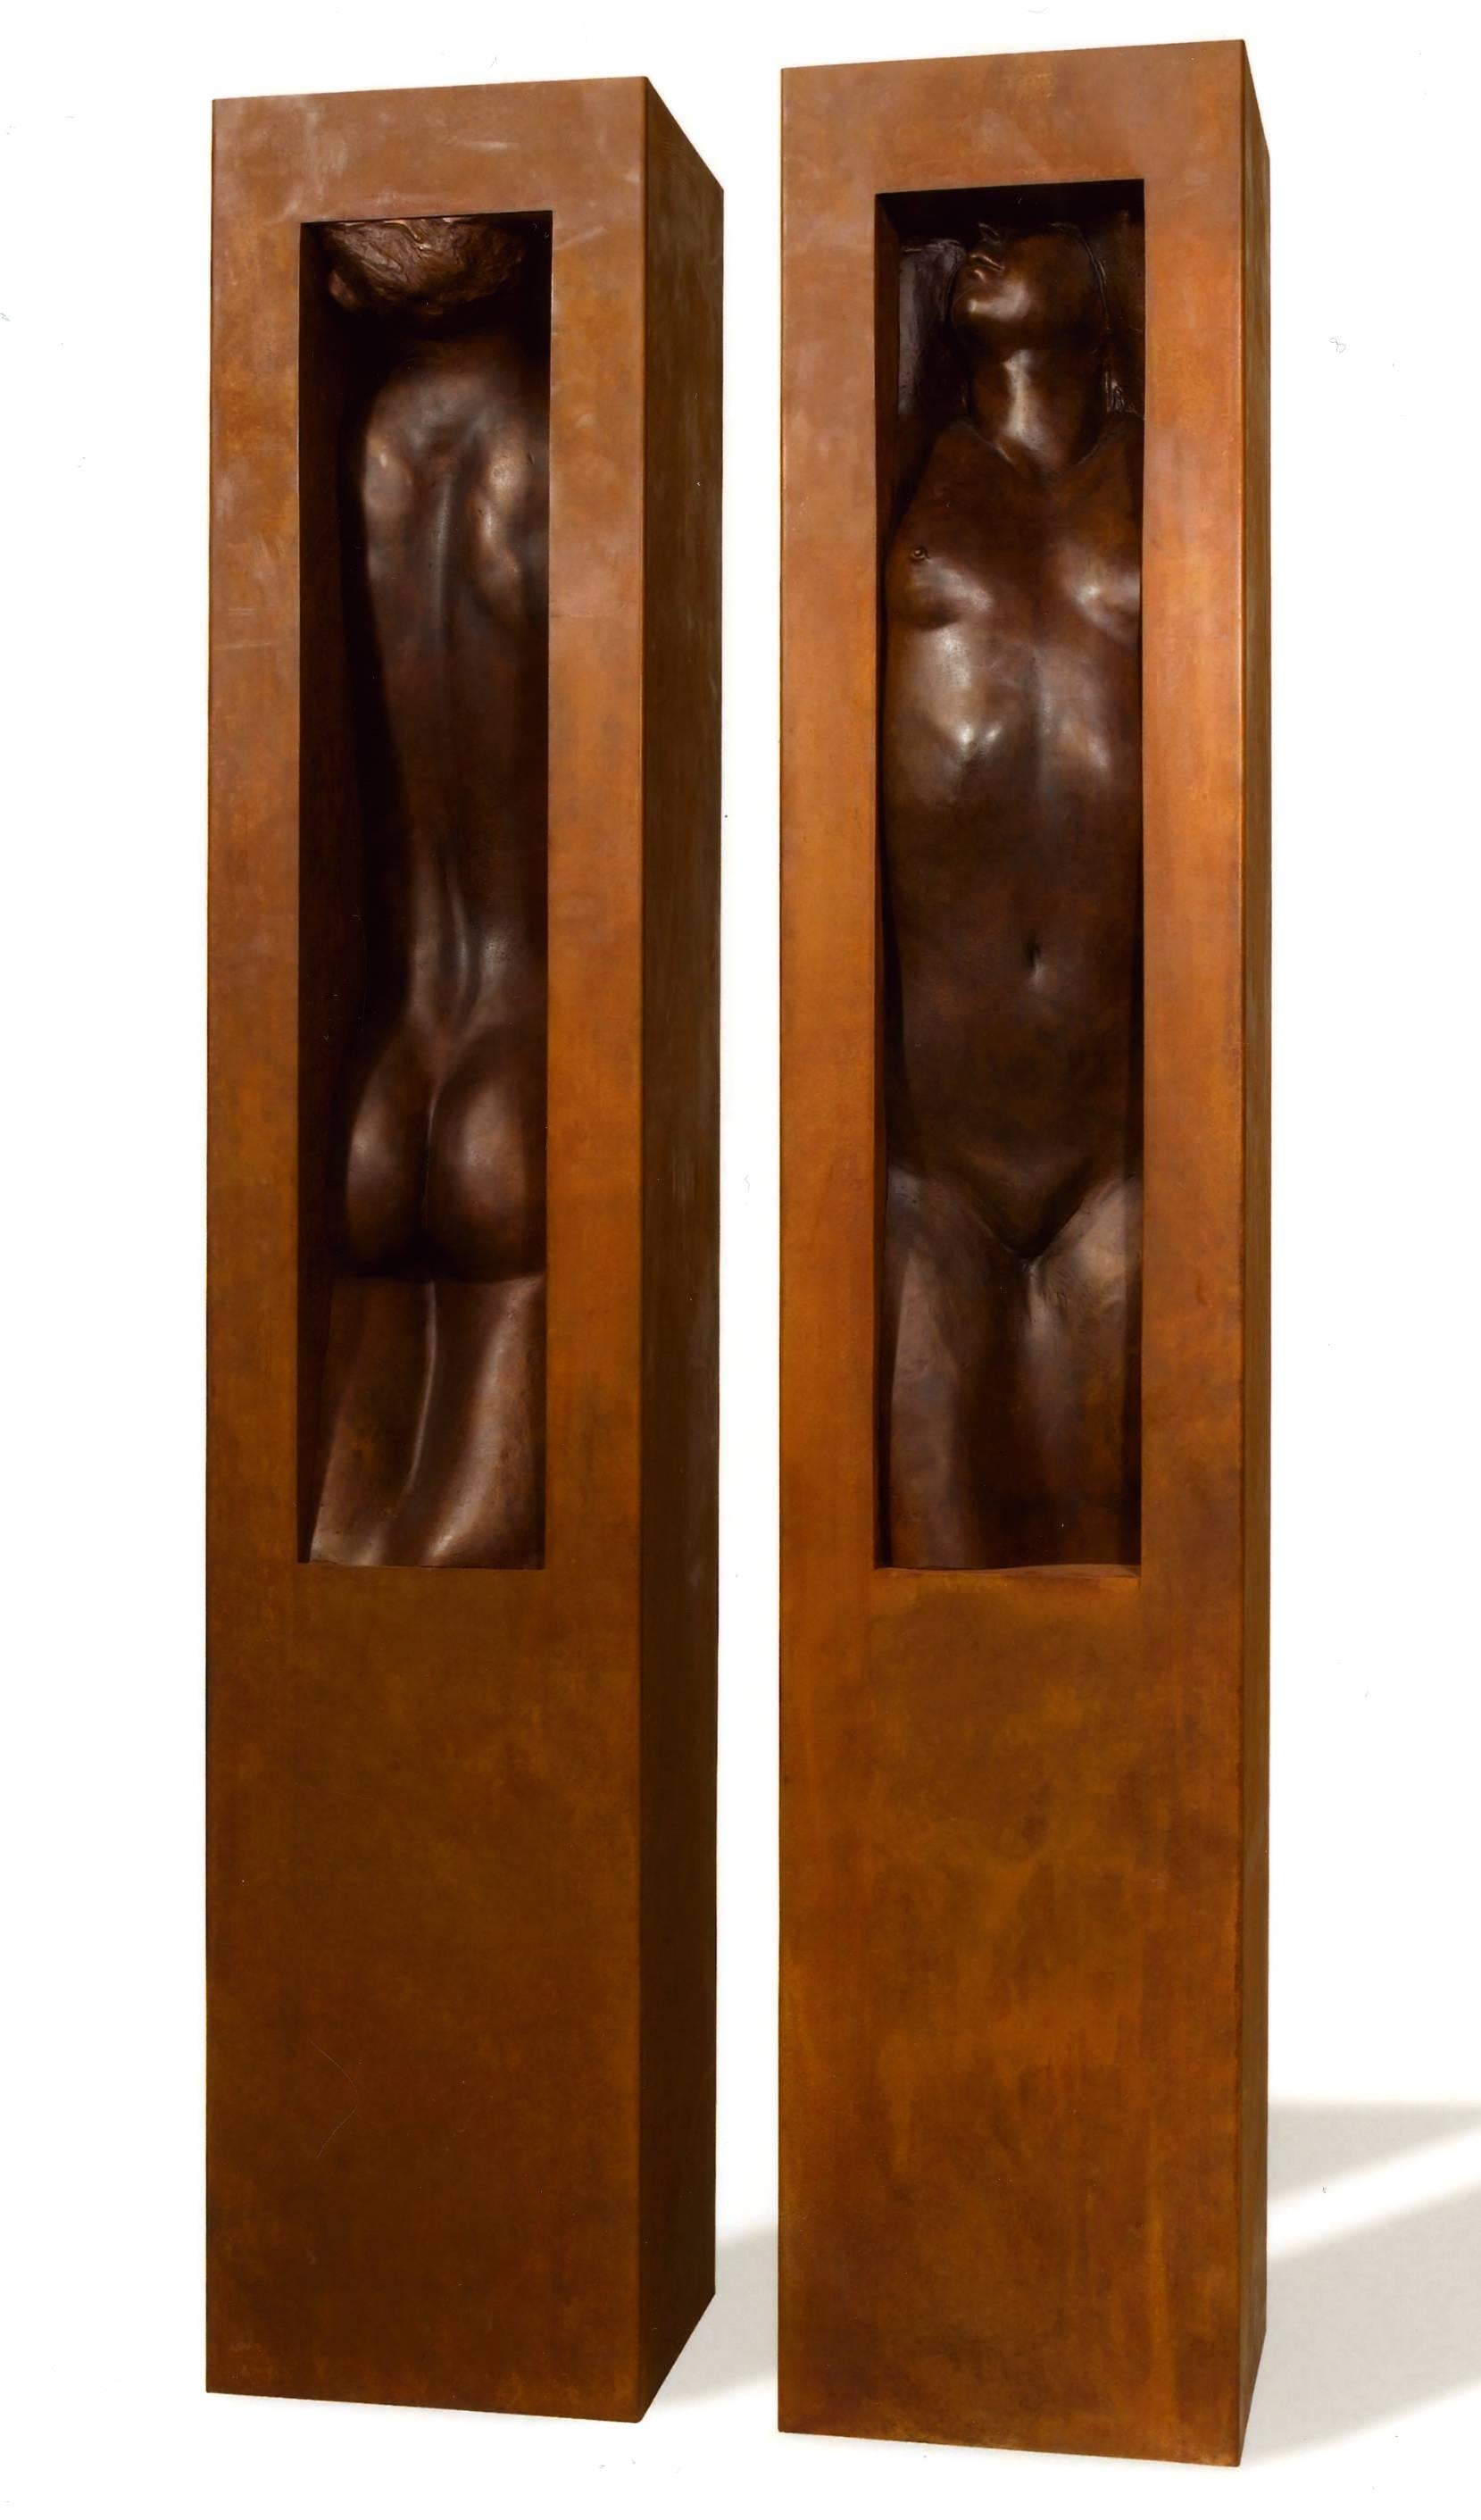 Gabriele Garbolino Rù Nude Sculpture - Adam and Eve. Italian school Contemporary bronze sculpture, Nude Man and Woman